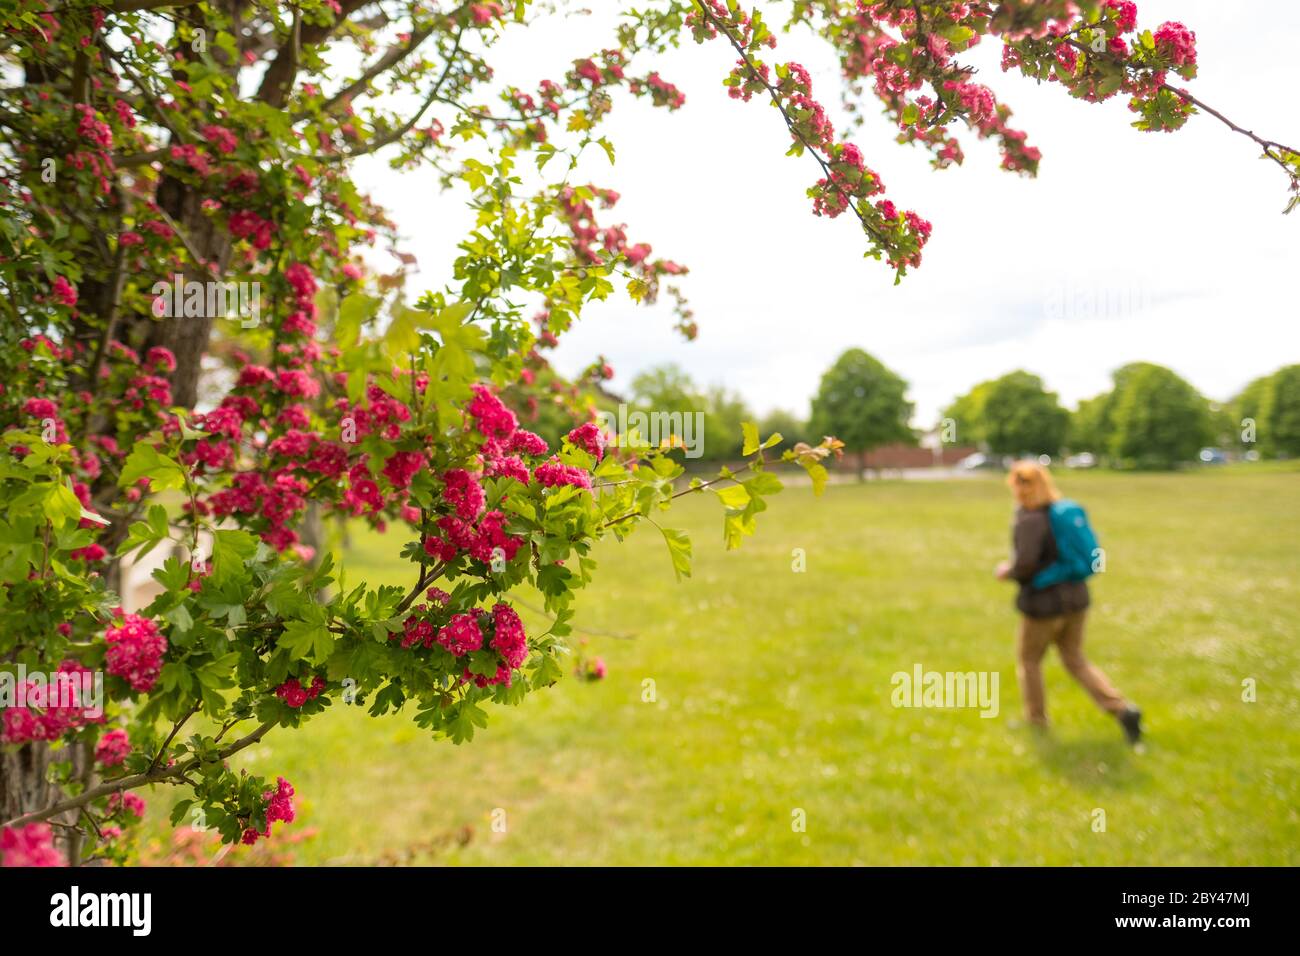 Membro del pubblico visto a piedi in un parco pubblico, incorniciato da fiori rossi gratuiti. La donna è vista indossare un sacco giorno. Foto Stock